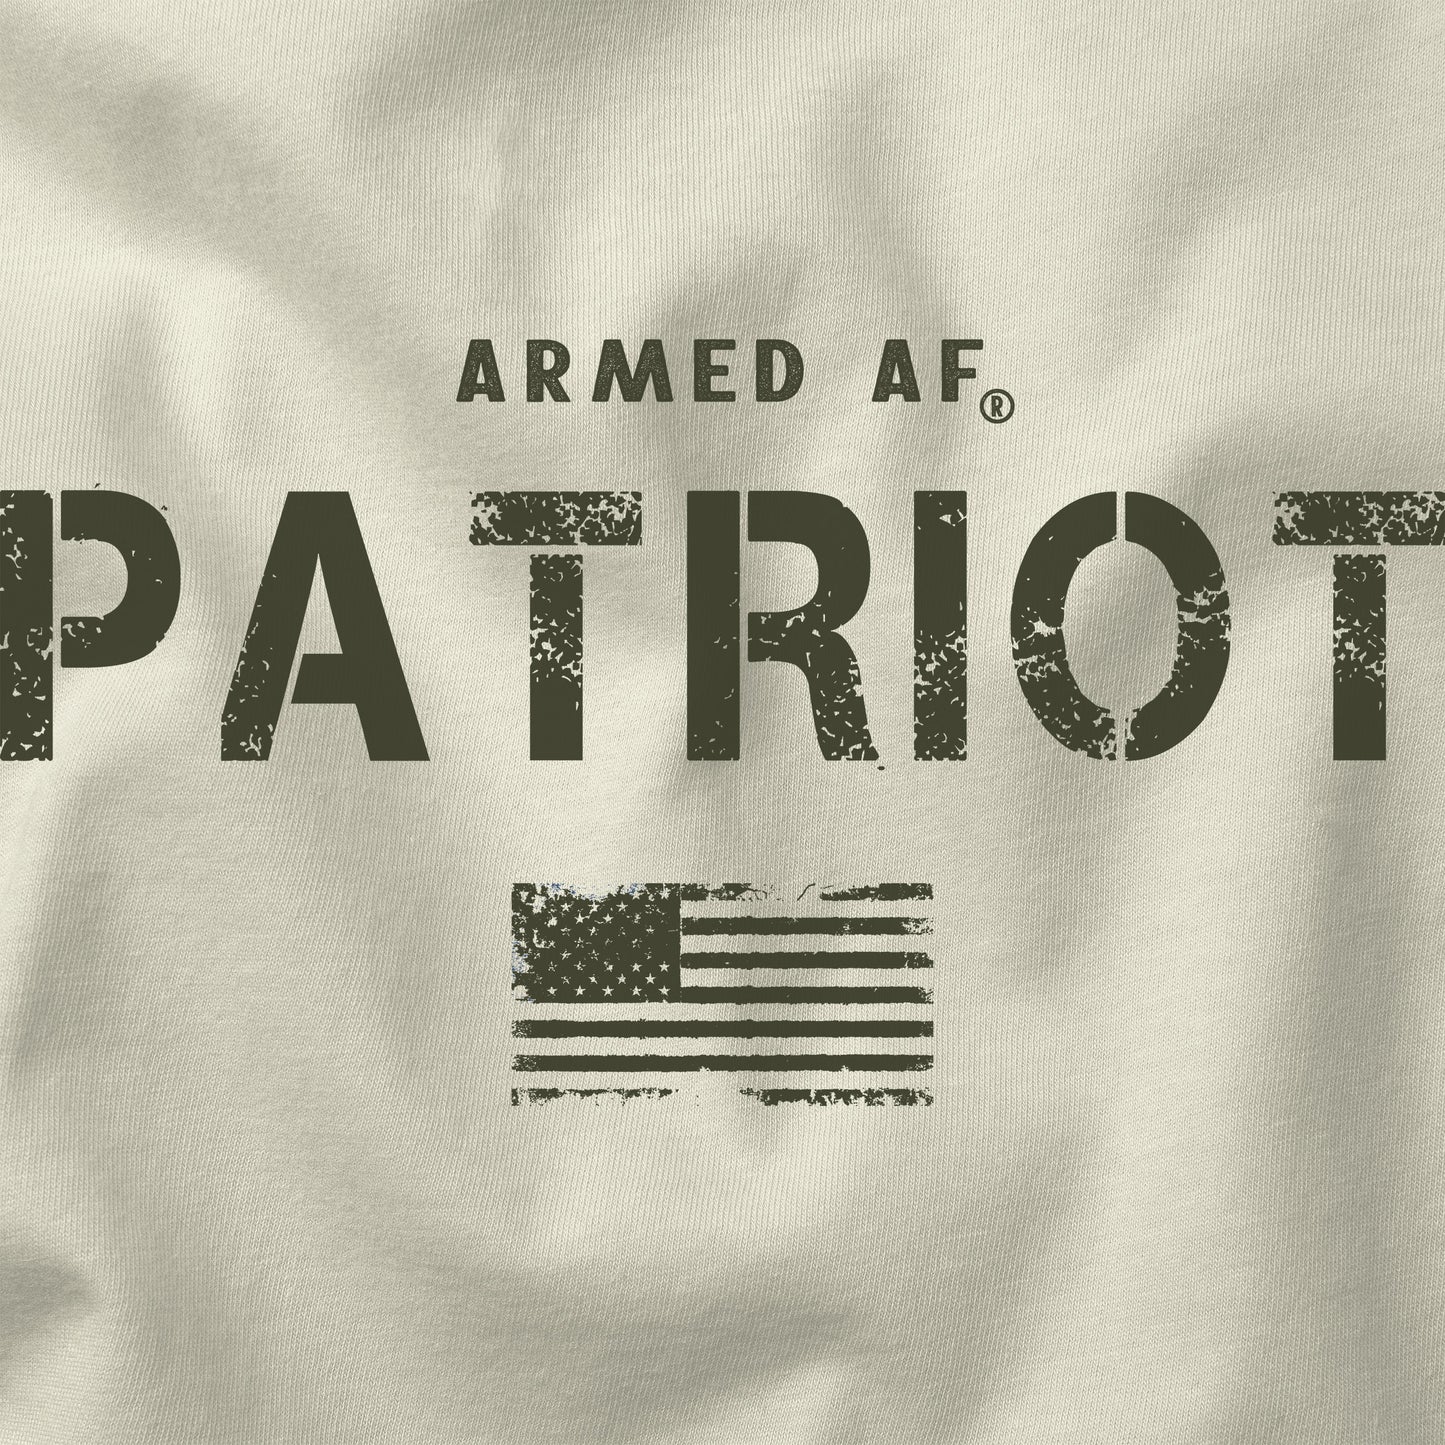 Armed AF® Patriot tee shirt design closeup